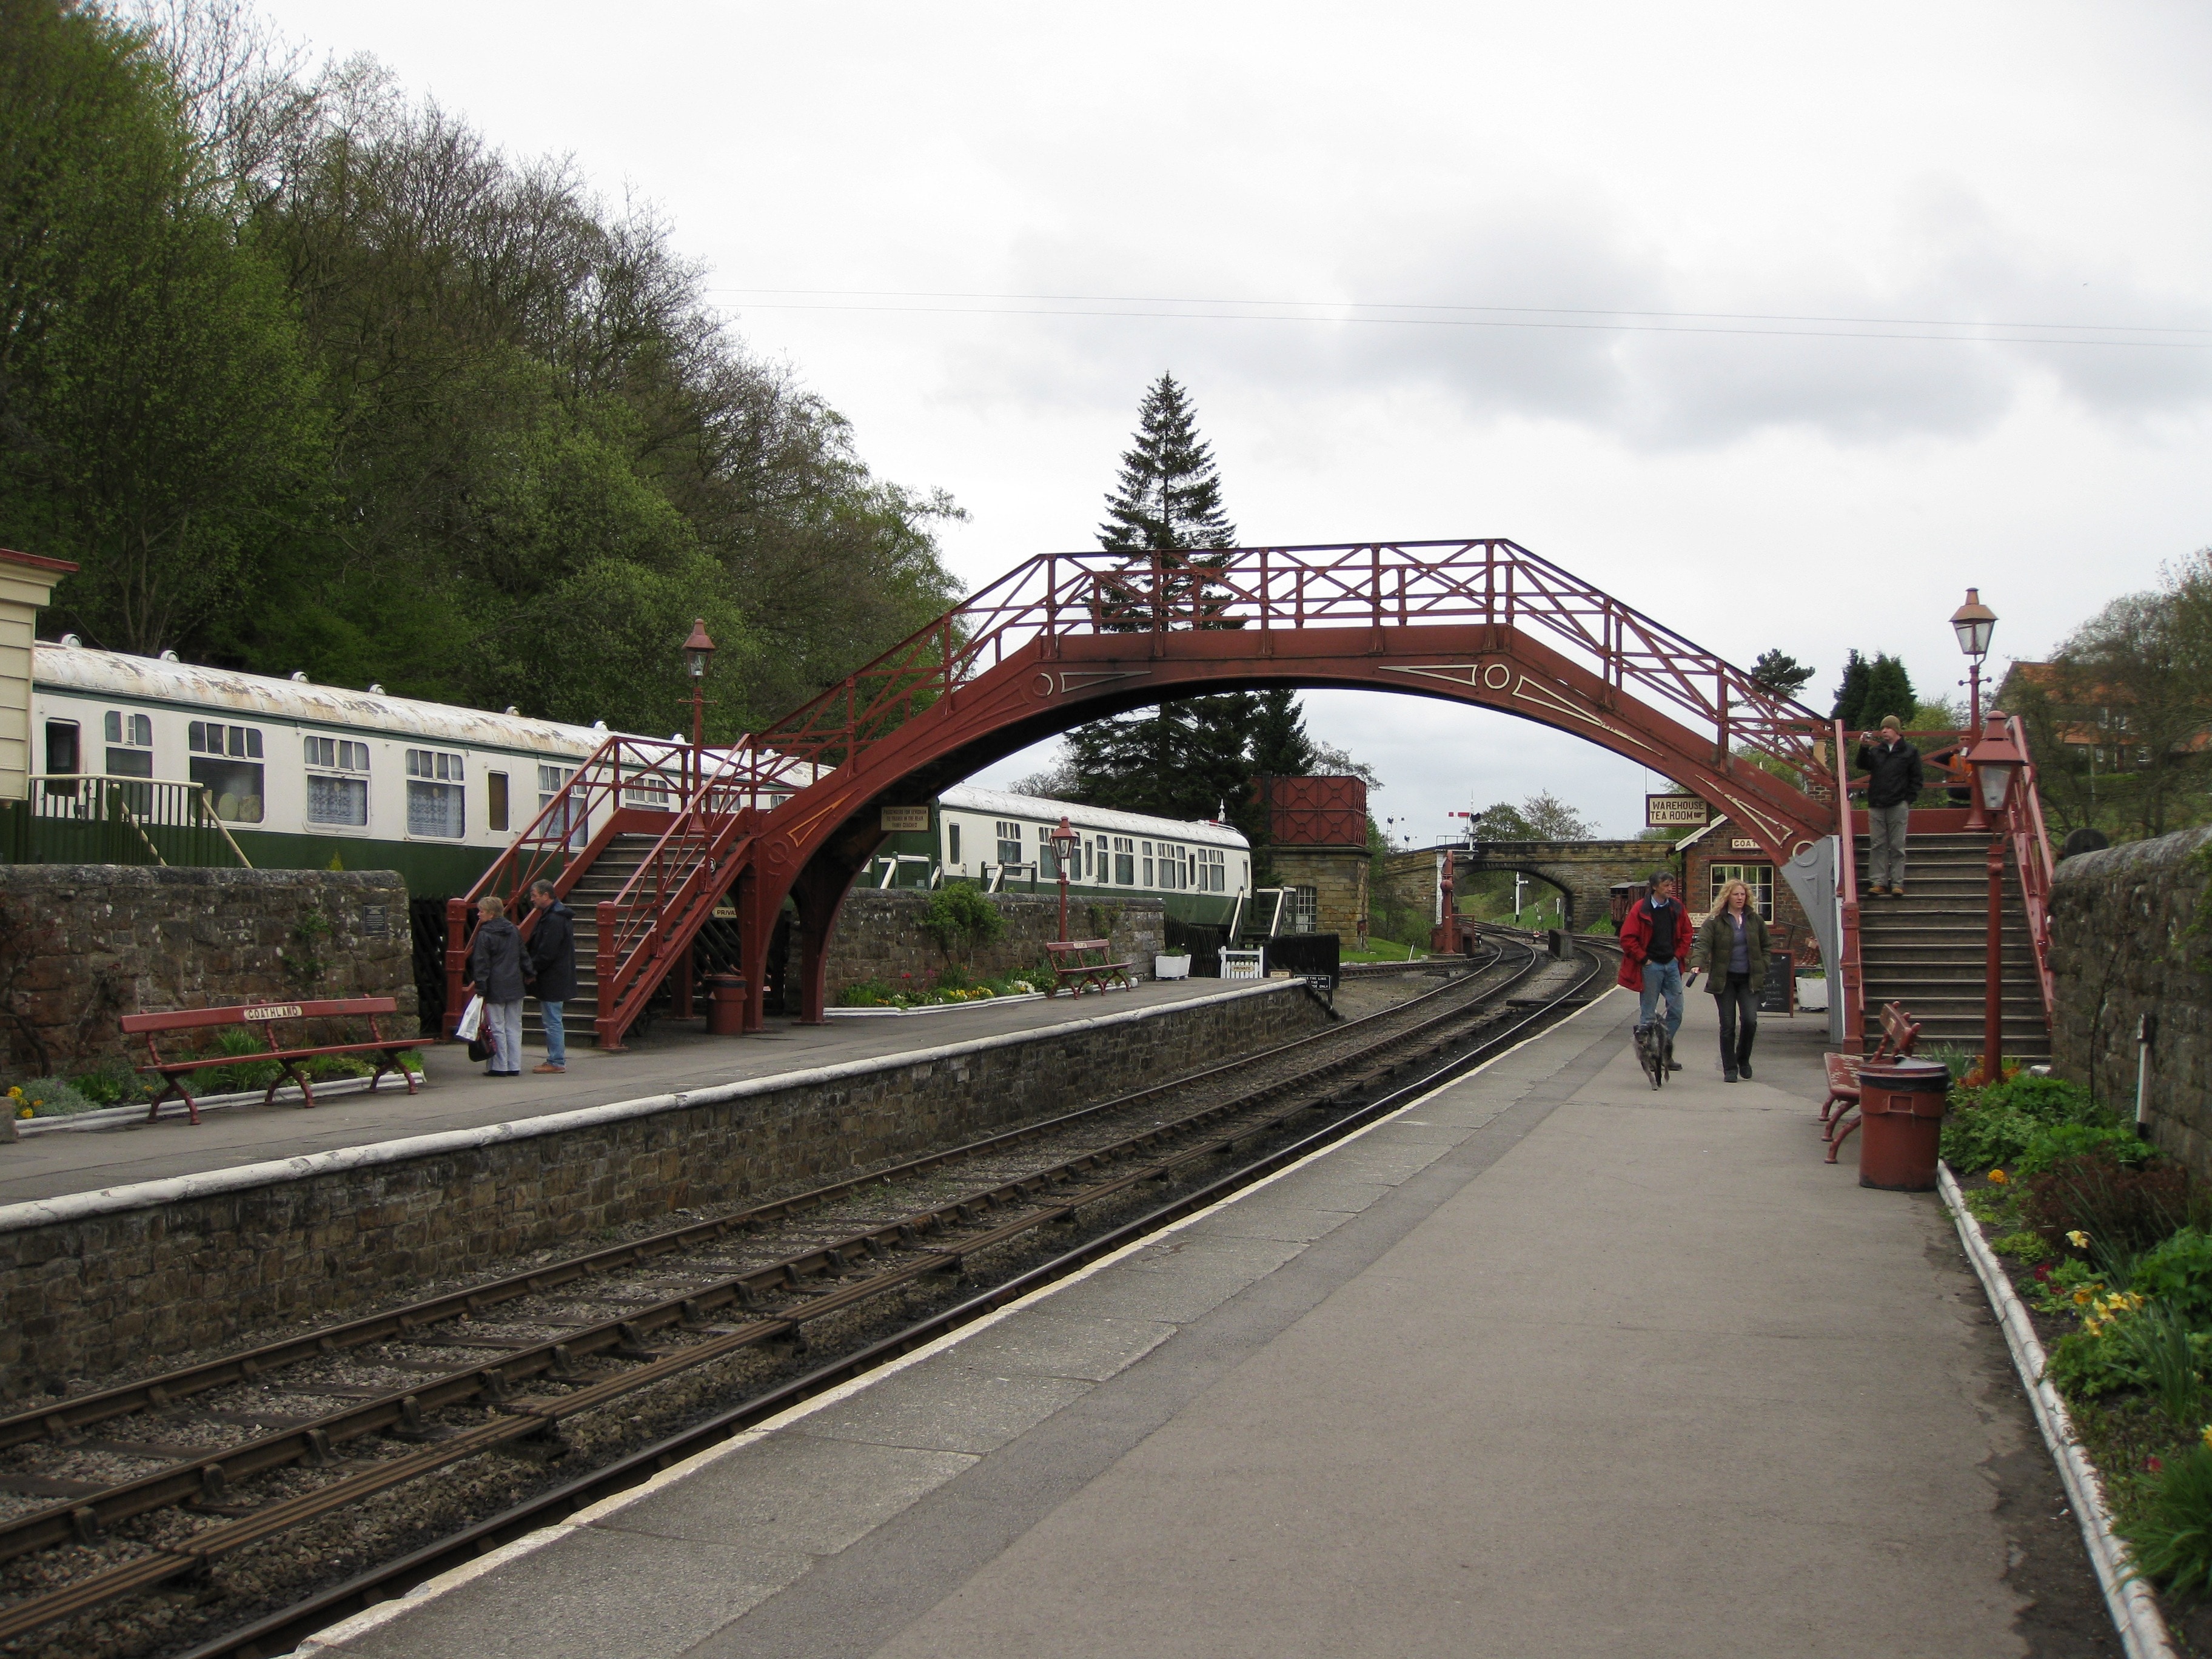 red metal bridge